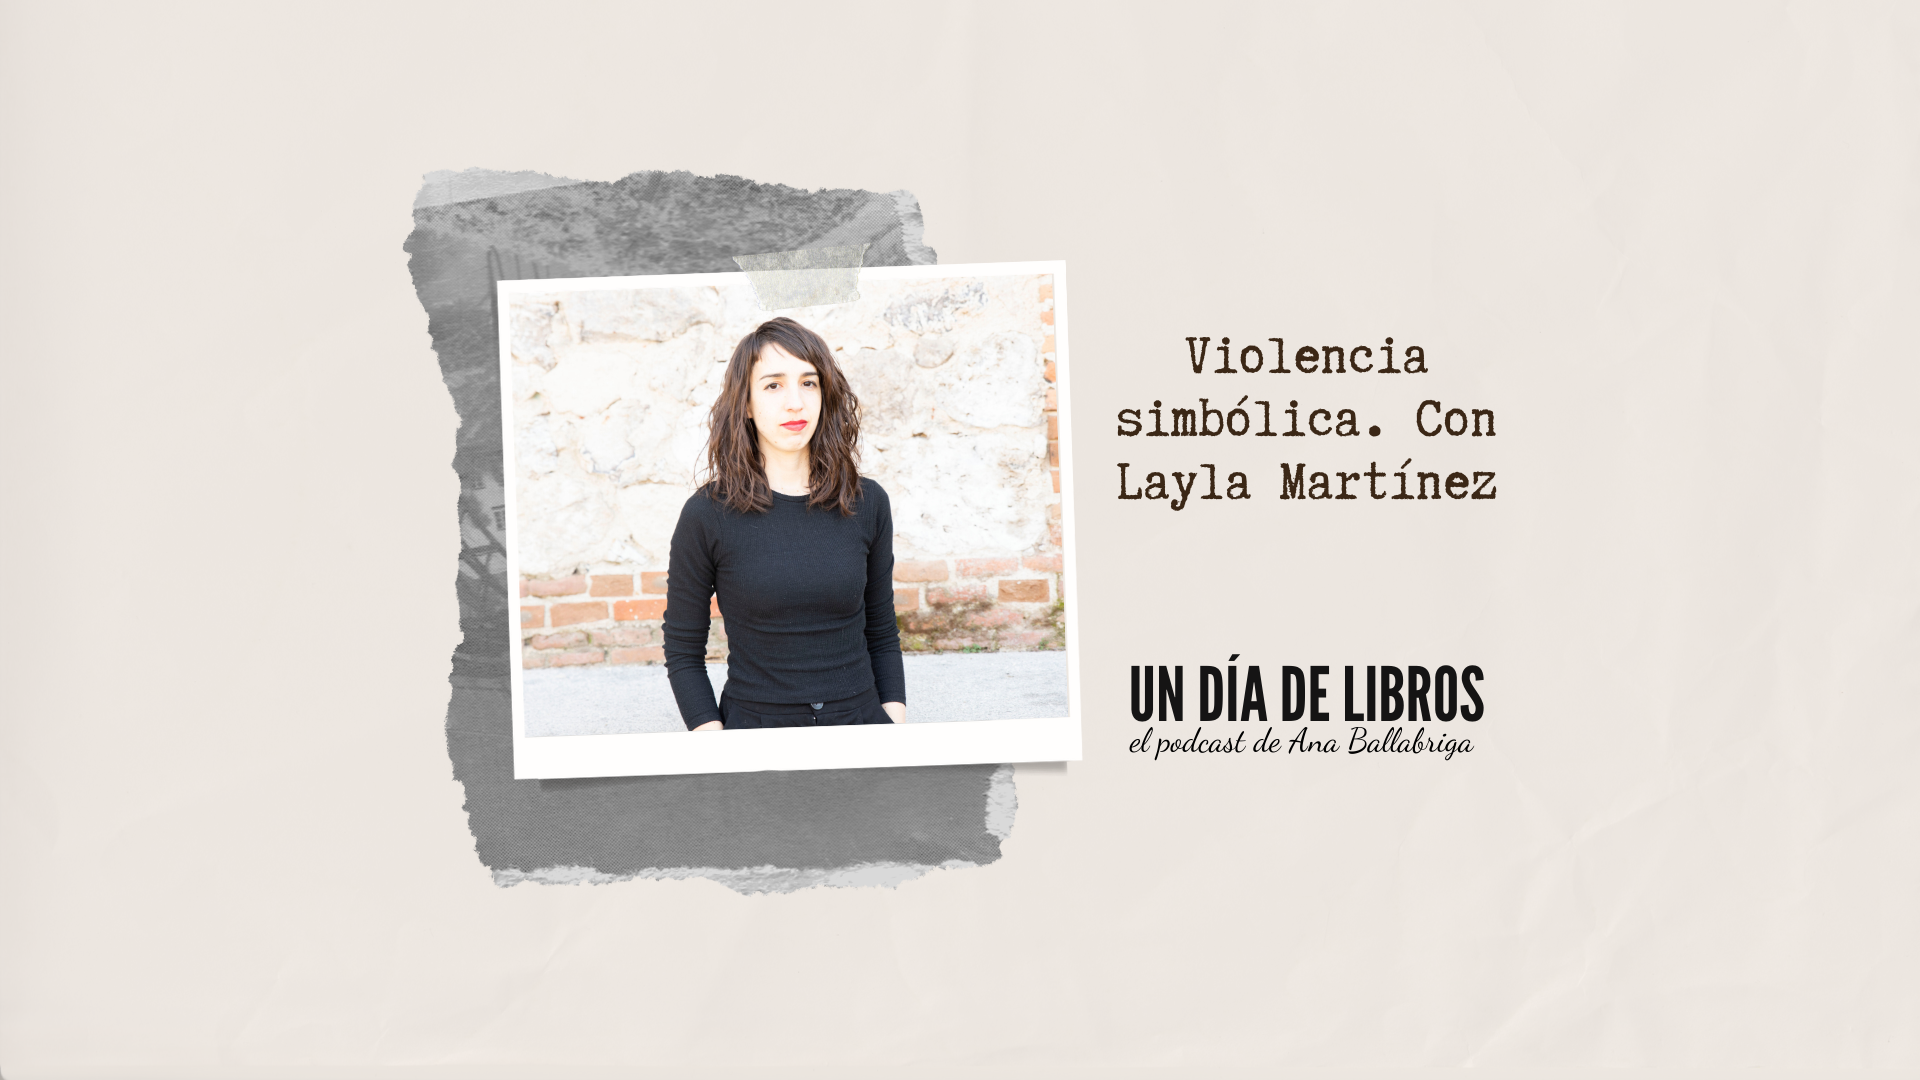 La violencia simbólica, con Layla Martínez